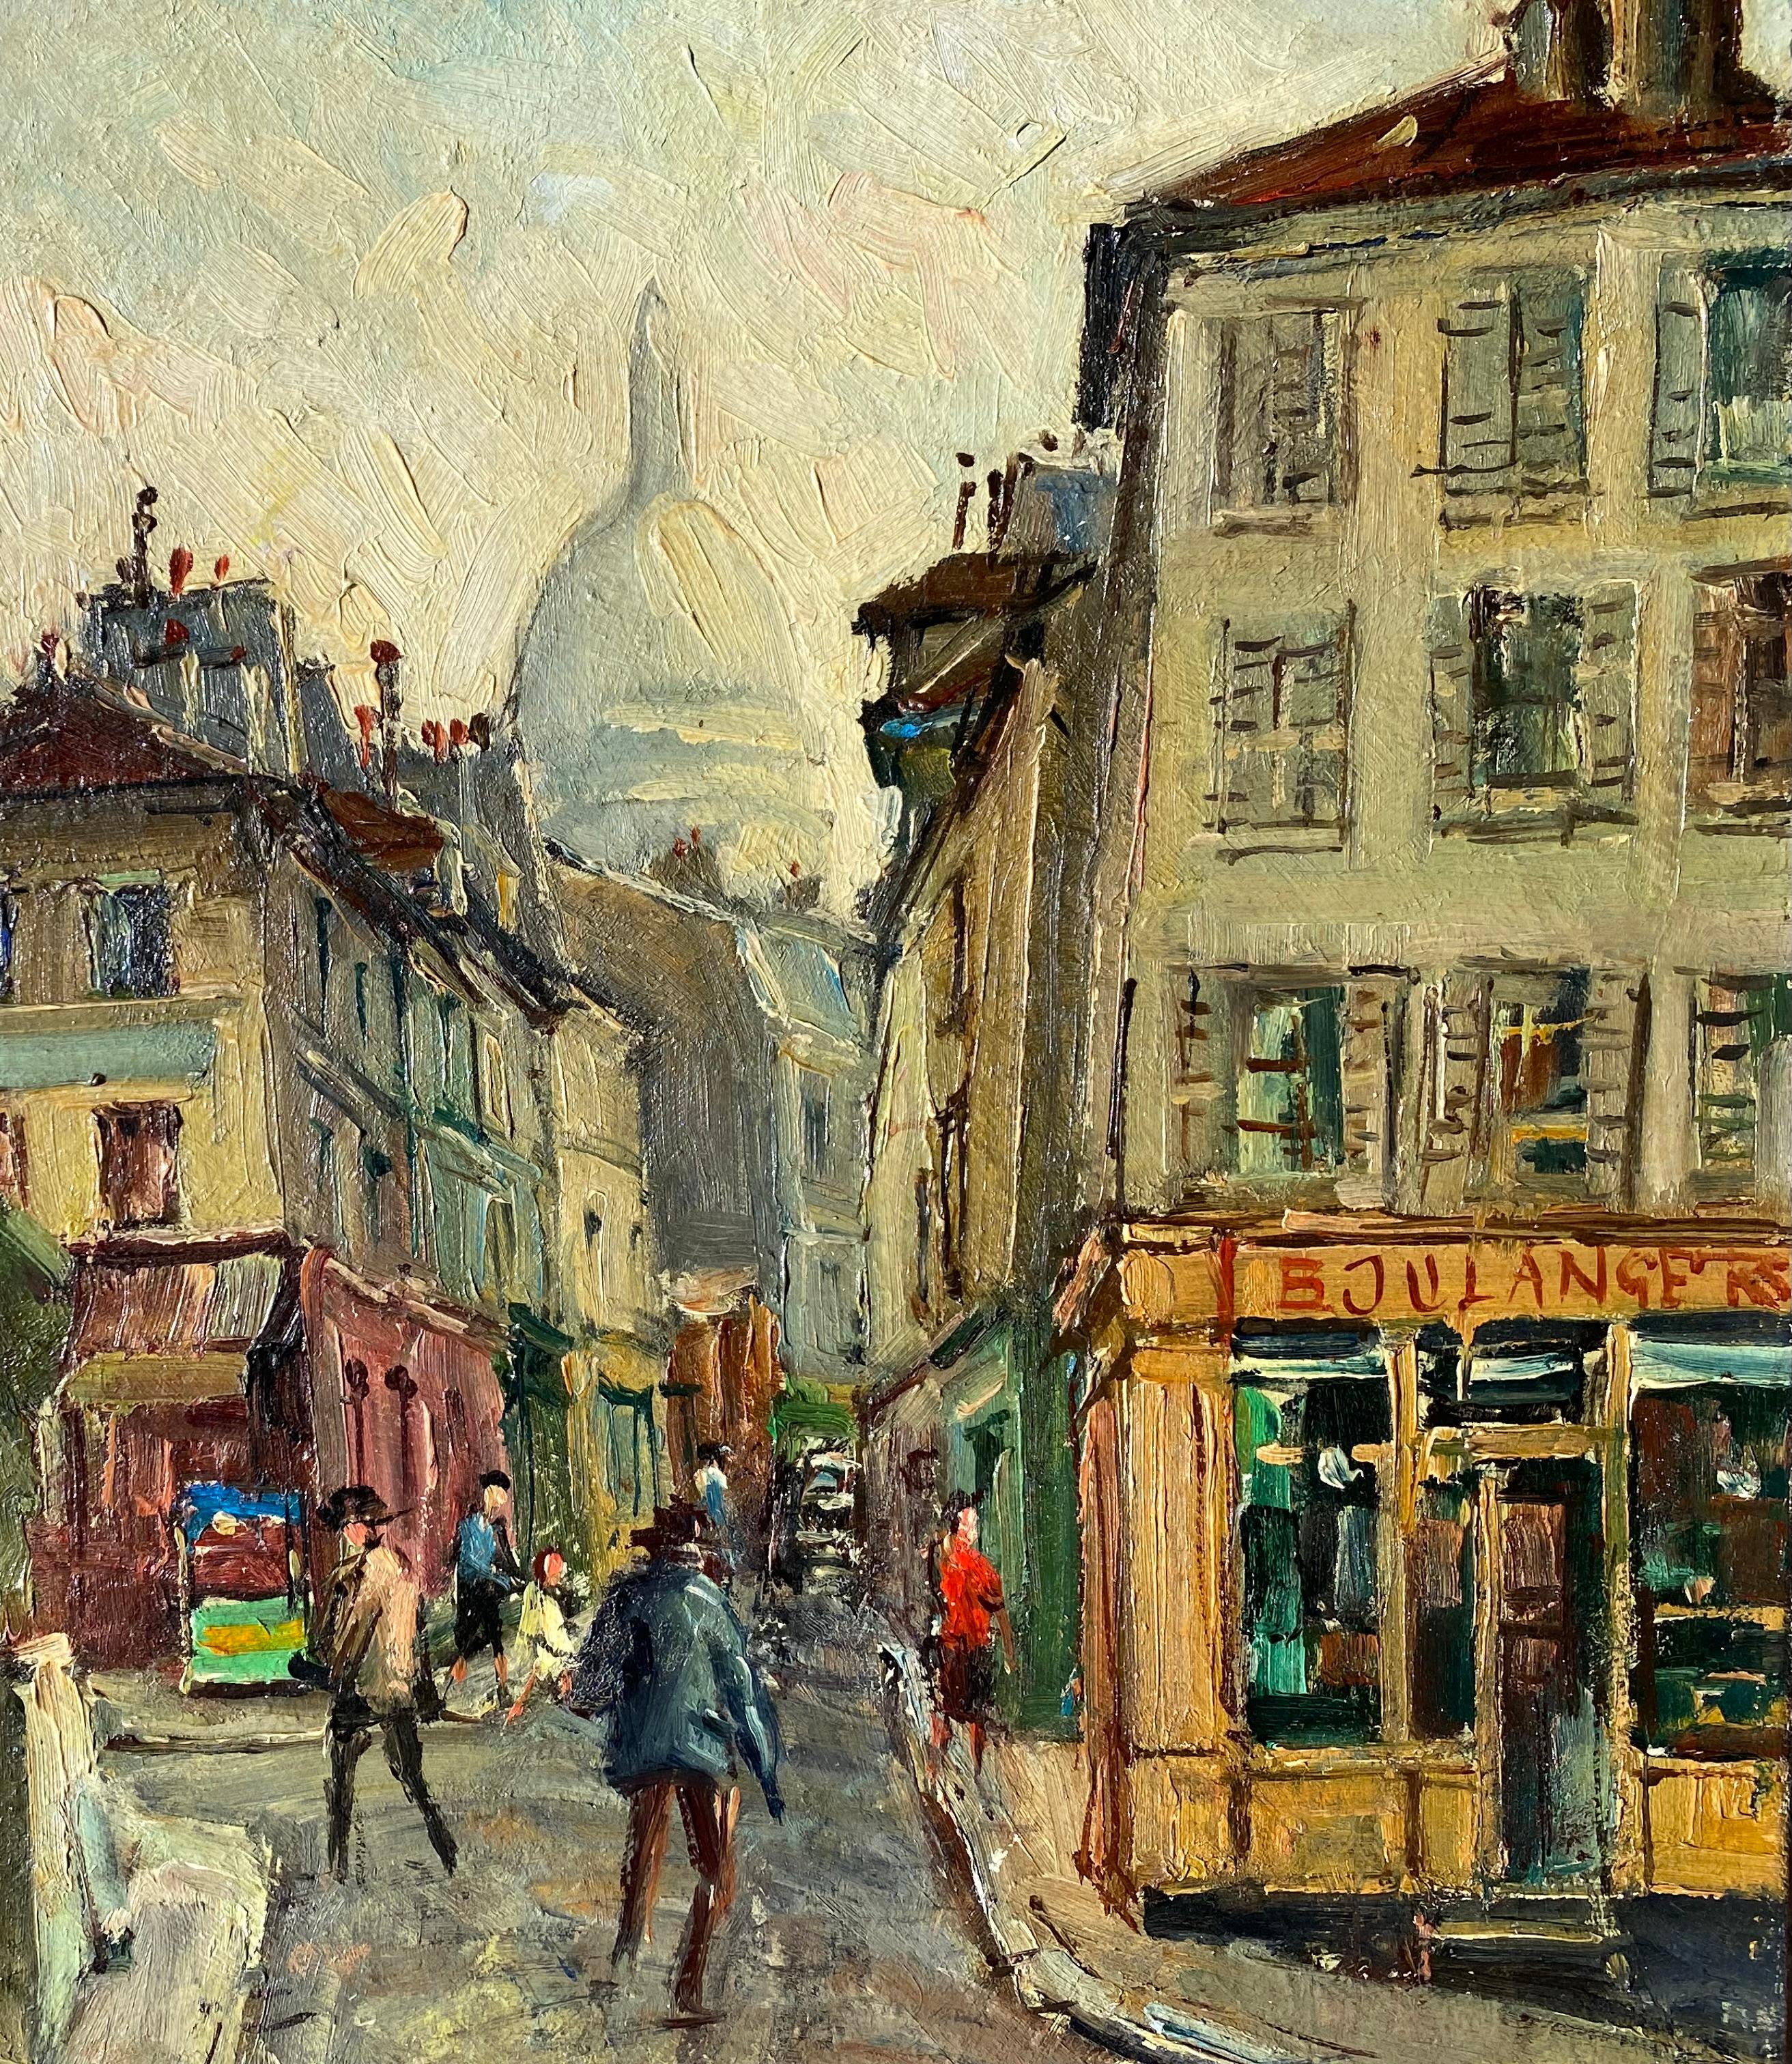 Sehr gut ausgeführtes Originalgemälde in Öl auf Leinwand mit einer belebten Straßenszene in Montmartre, Paris.  Der Schauplatz ist die Rue Norvins mit Sacre-Coeur im Hintergrund.  Signiert vom Künstler unten links. Verso auf dem Keilrahmen betitelt.